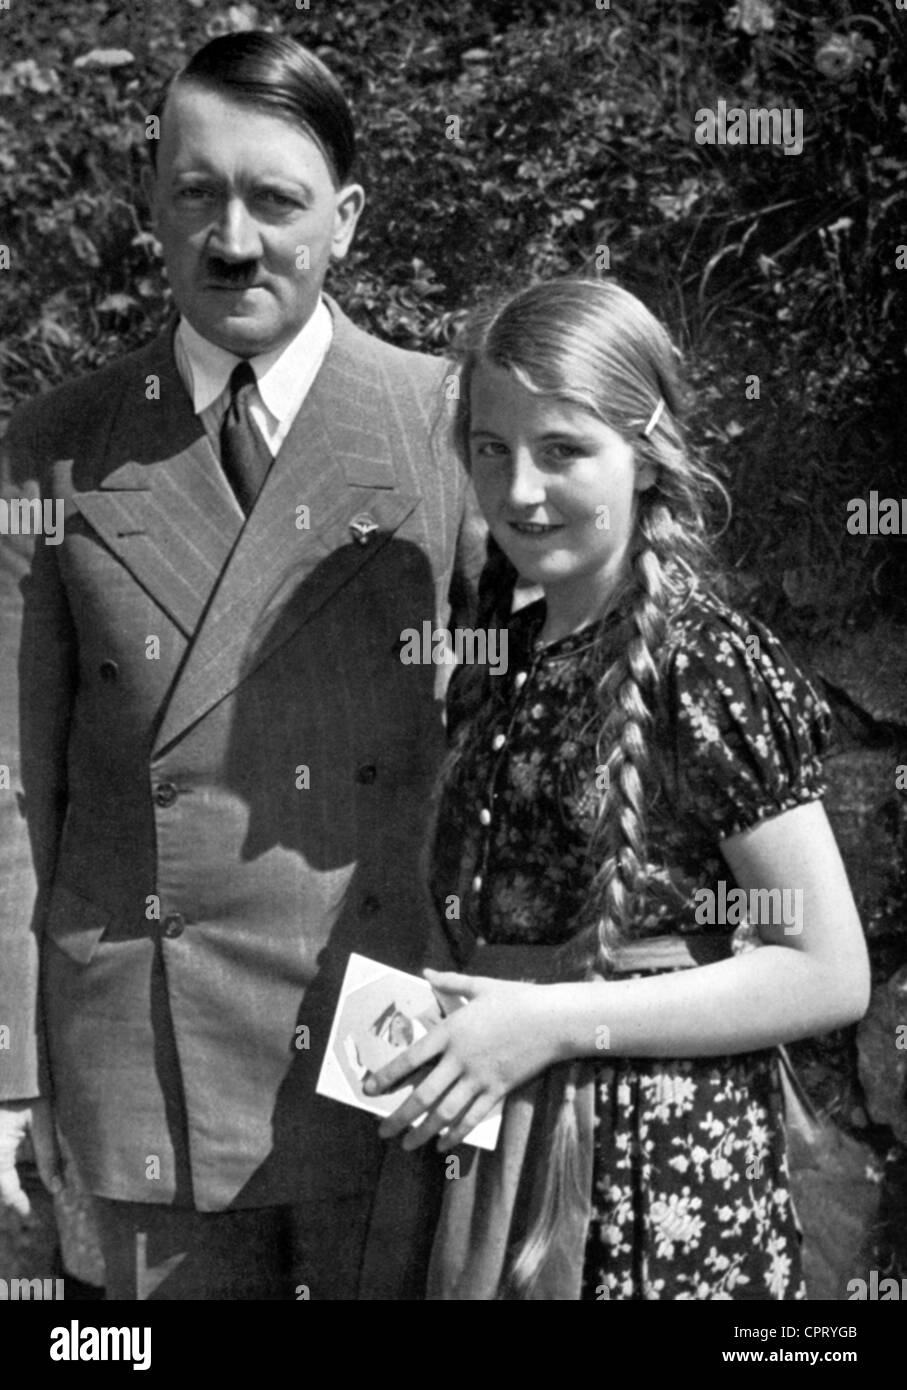 Hitler, Adolf, 20.4.1889 - 30.4.1945, deutscher Politiker (NSDAP), Privatsphäre, mit einem jungen Mädchen, Berchtesgaden, Oberbayern, 1935 Stockfoto